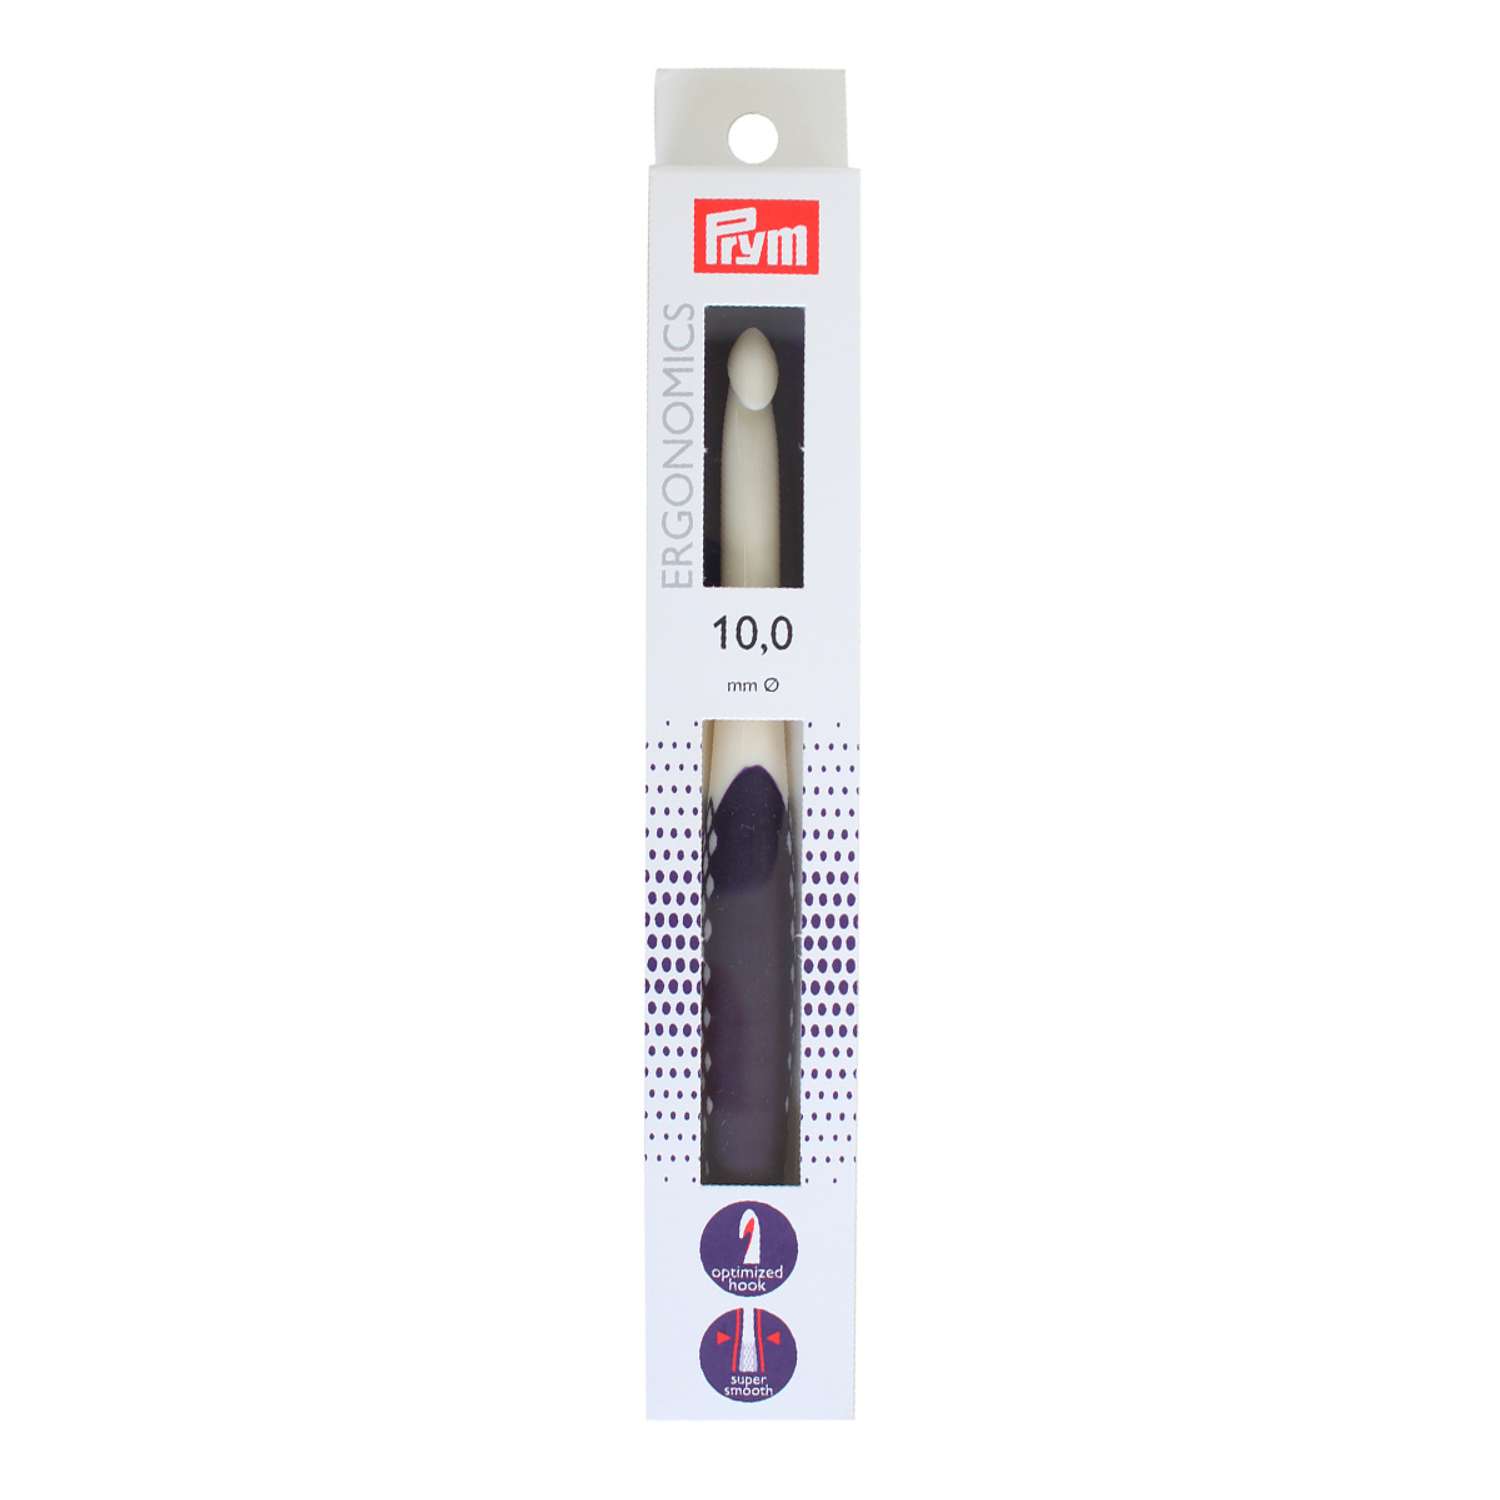 Крючок для вязания Prym эргономичный с прорезиненной ручкой удобный легкий 10 мм 18 см Ergonomics 218492 - фото 7